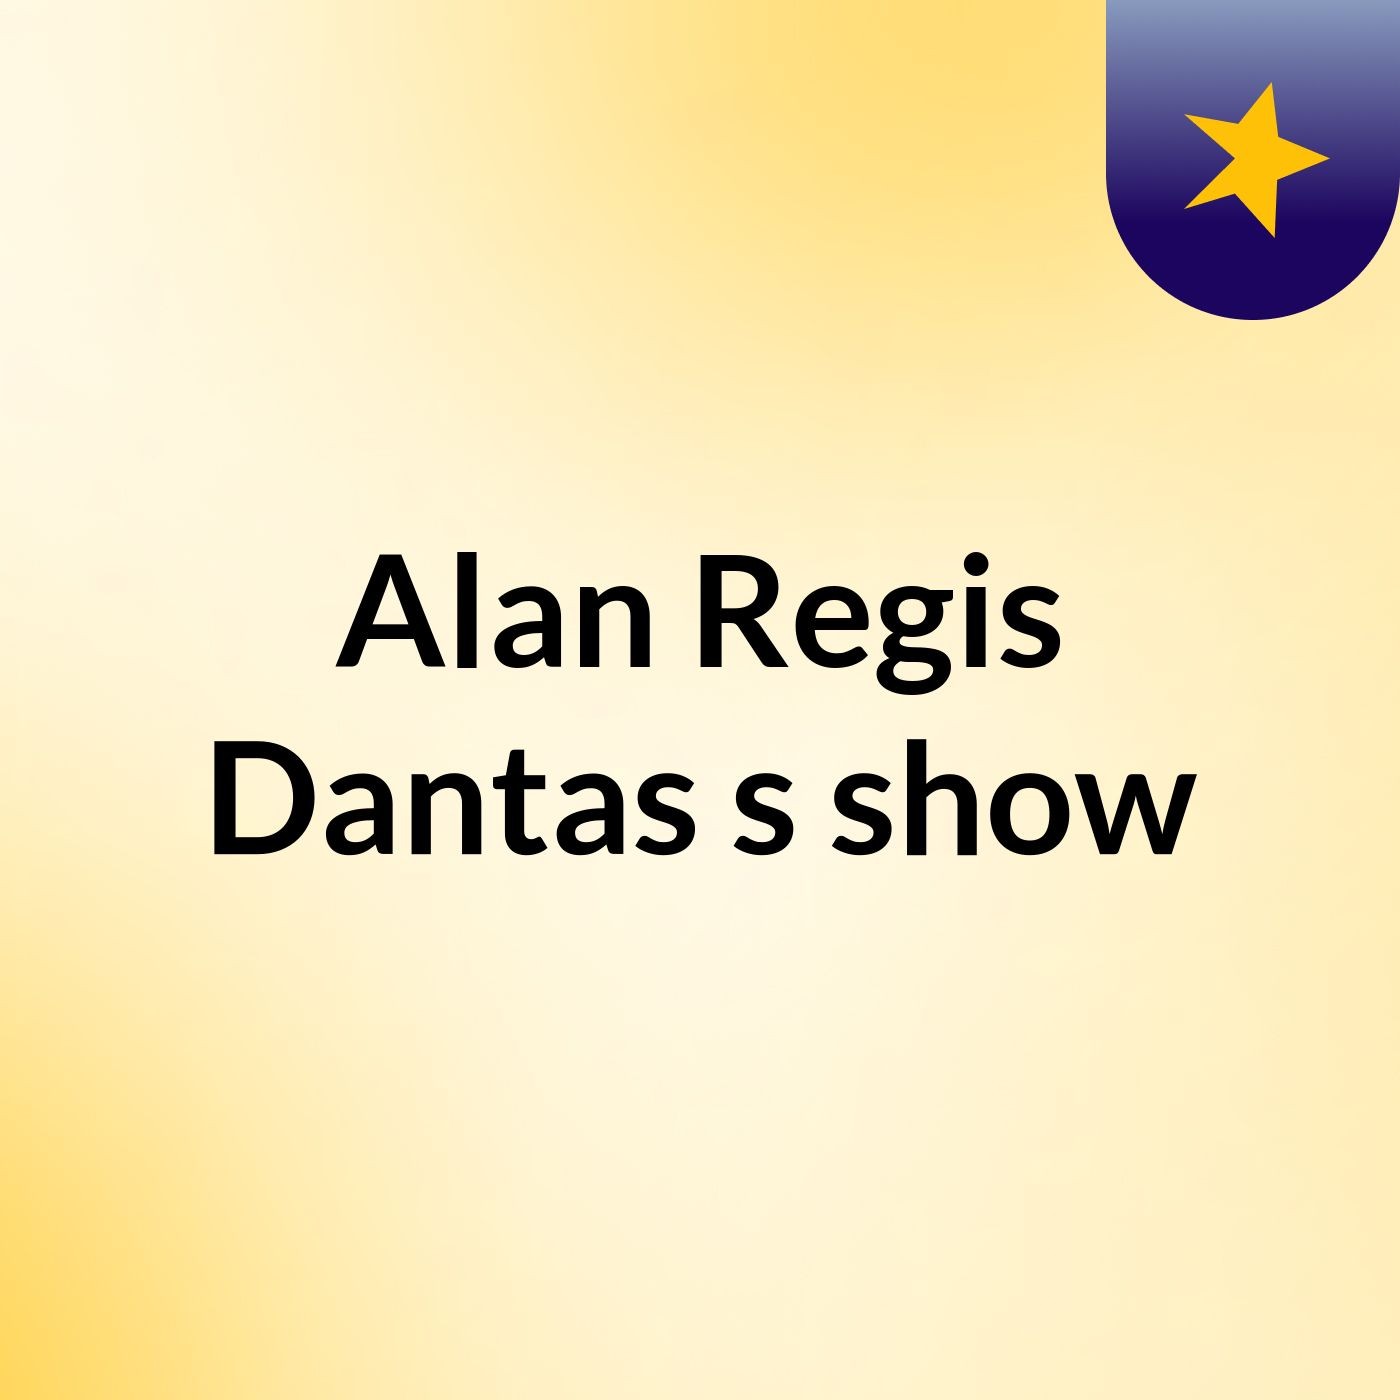 Alan Regis Dantas's show